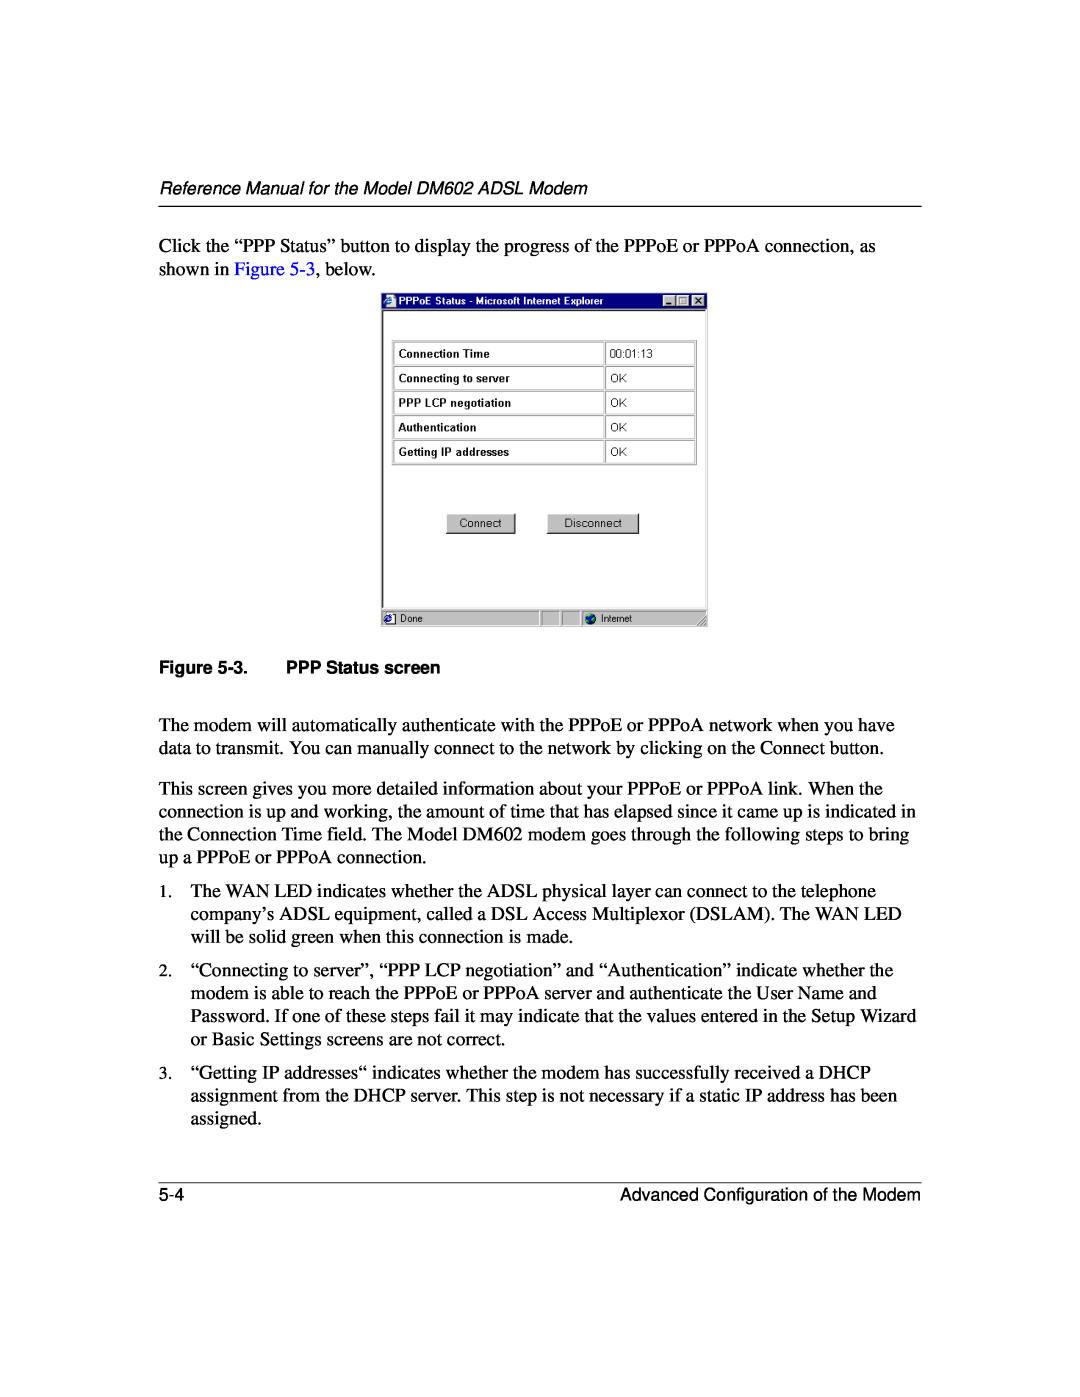 NETGEAR DM602 manual 3. PPP Status screen 